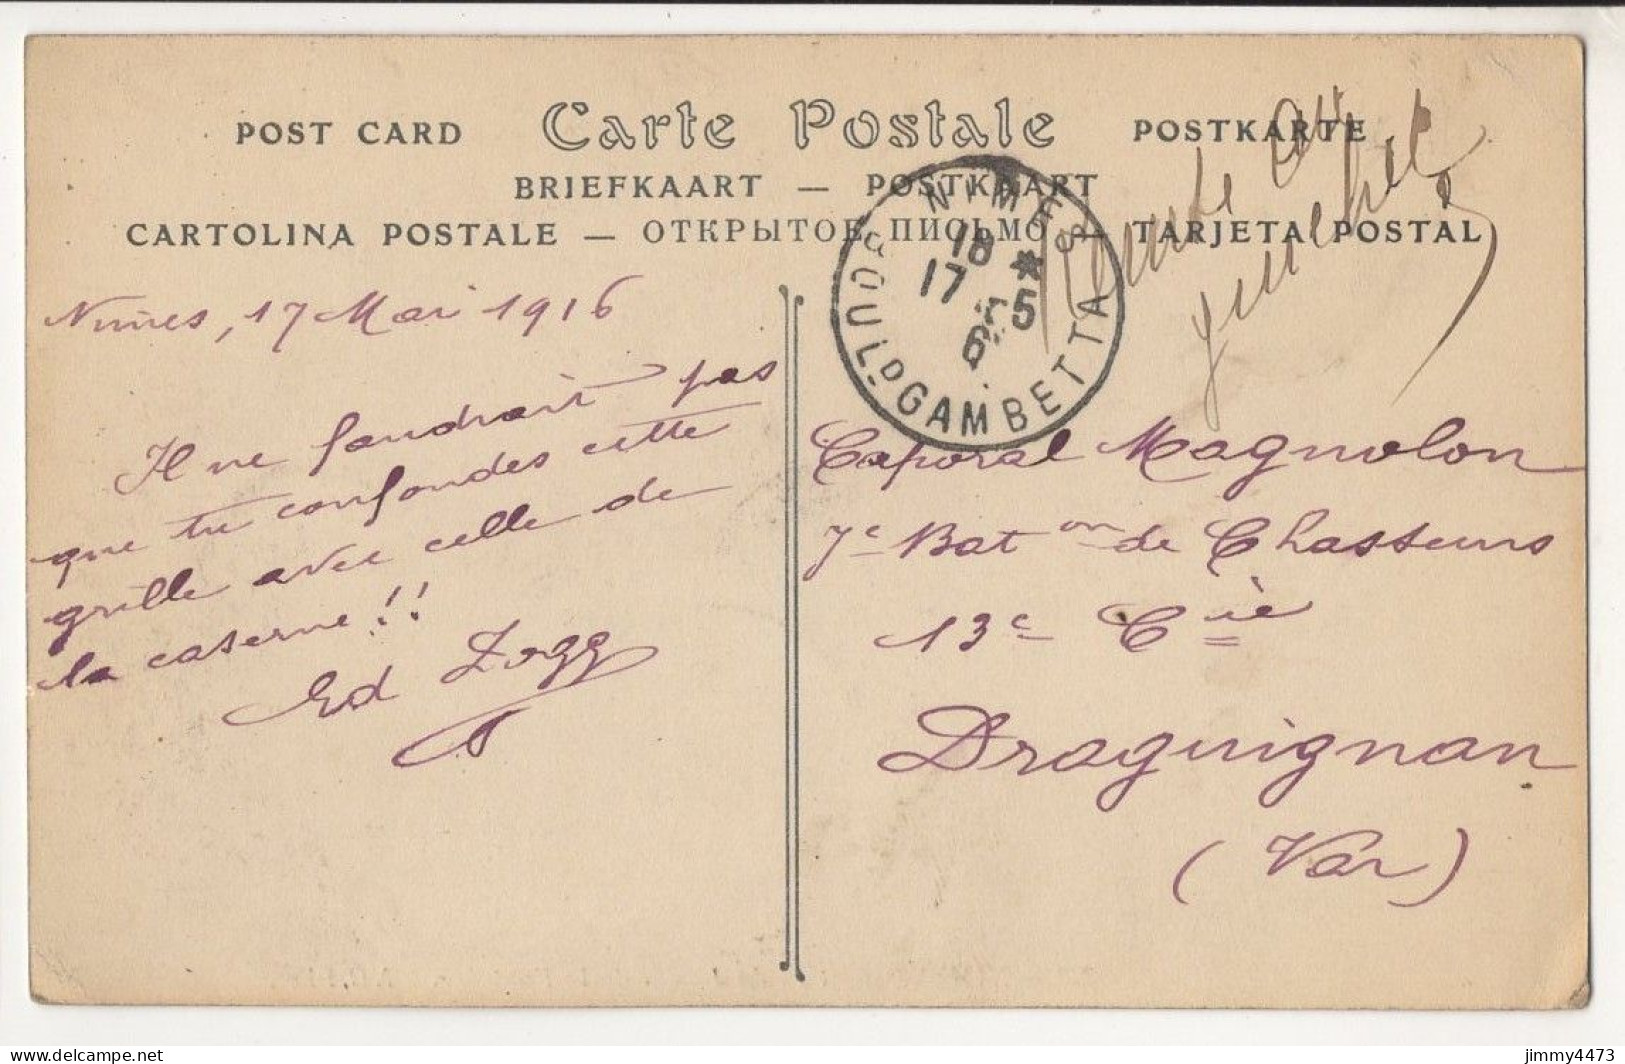 CPA - NÎMES En 1916 - Entrée Du Jardin De La Fontaine ( Bien Animée ) N° 232 - Edit. ND Phot. - Nîmes